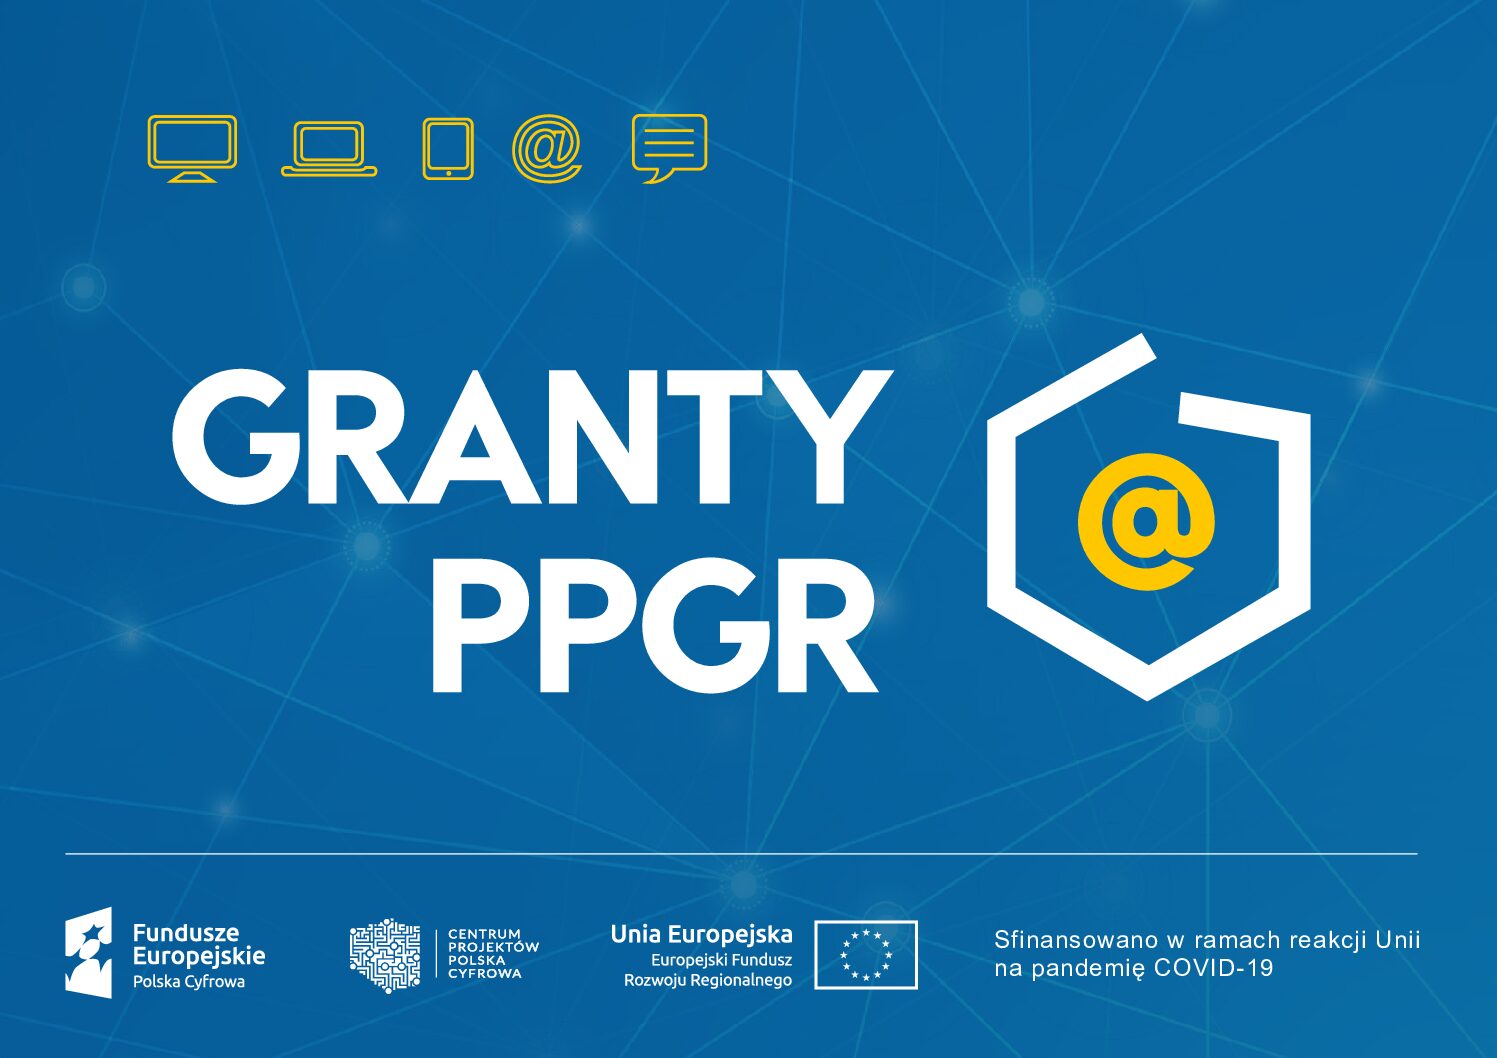 Wyłoniono wykonawców zadania grantu PPGR